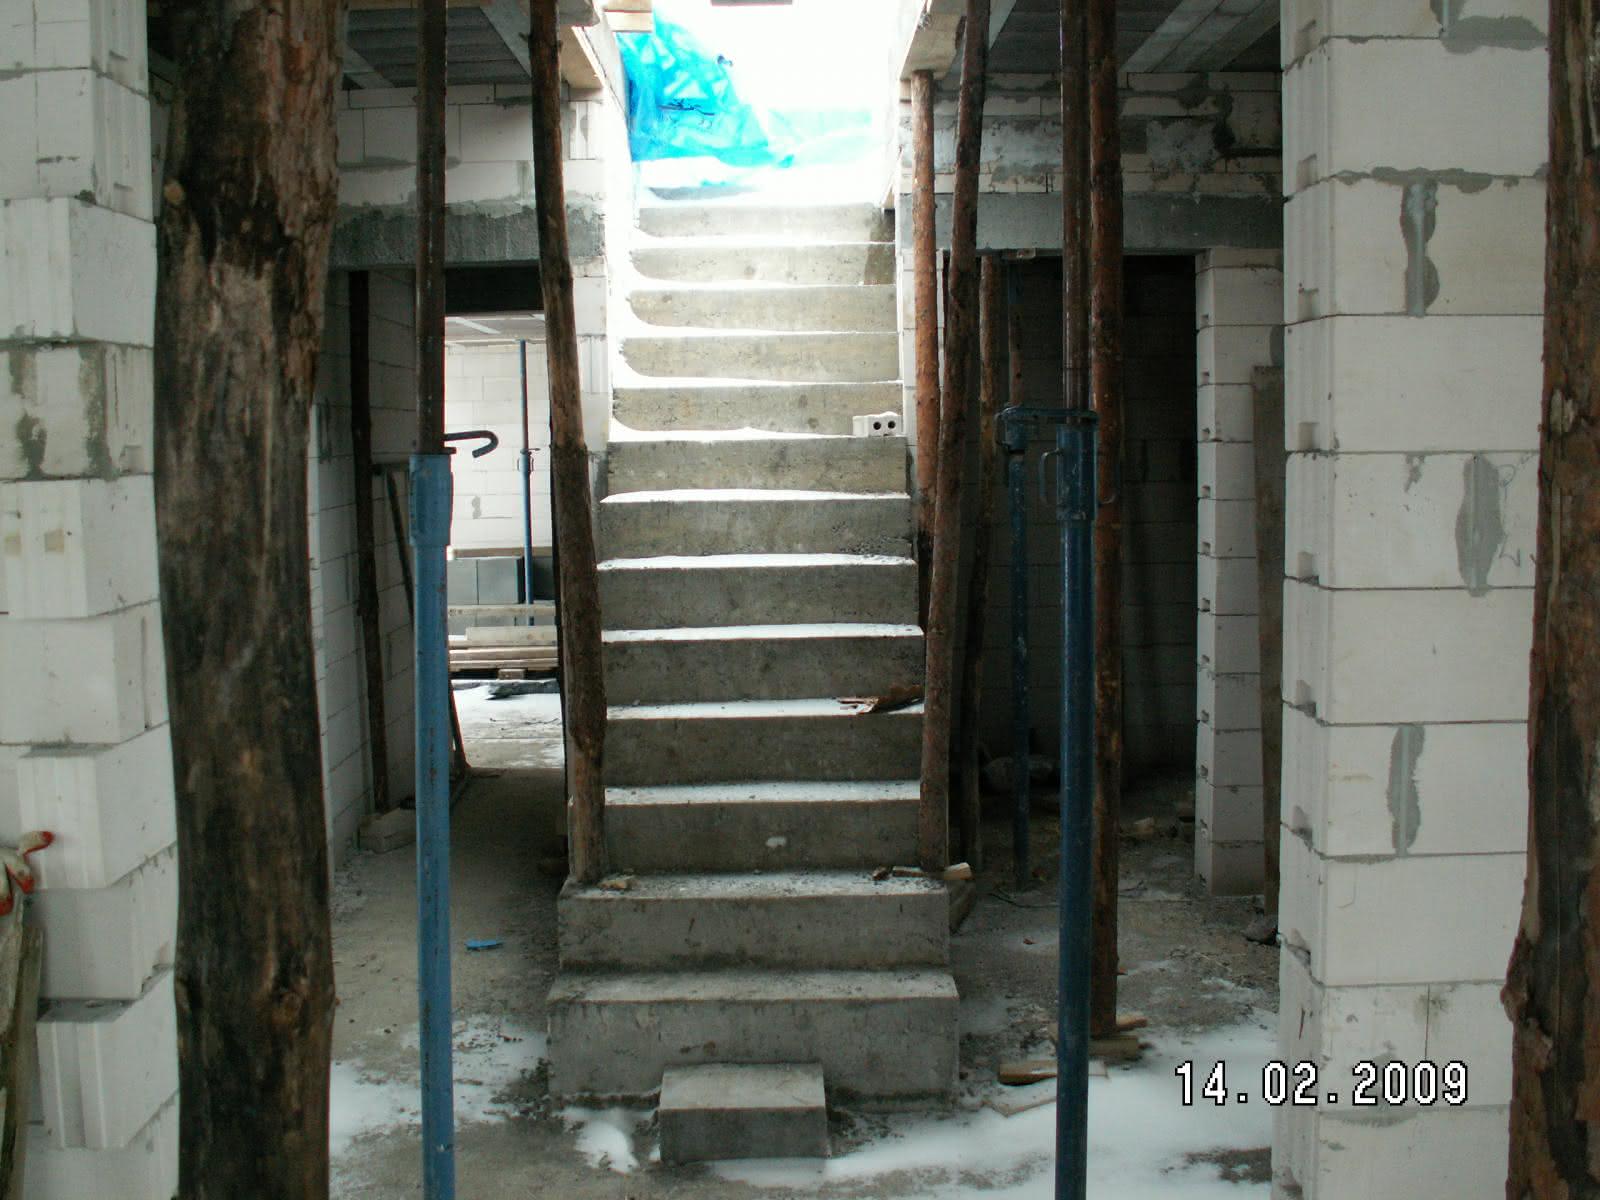 schody po wylaniu (widok z salonu)